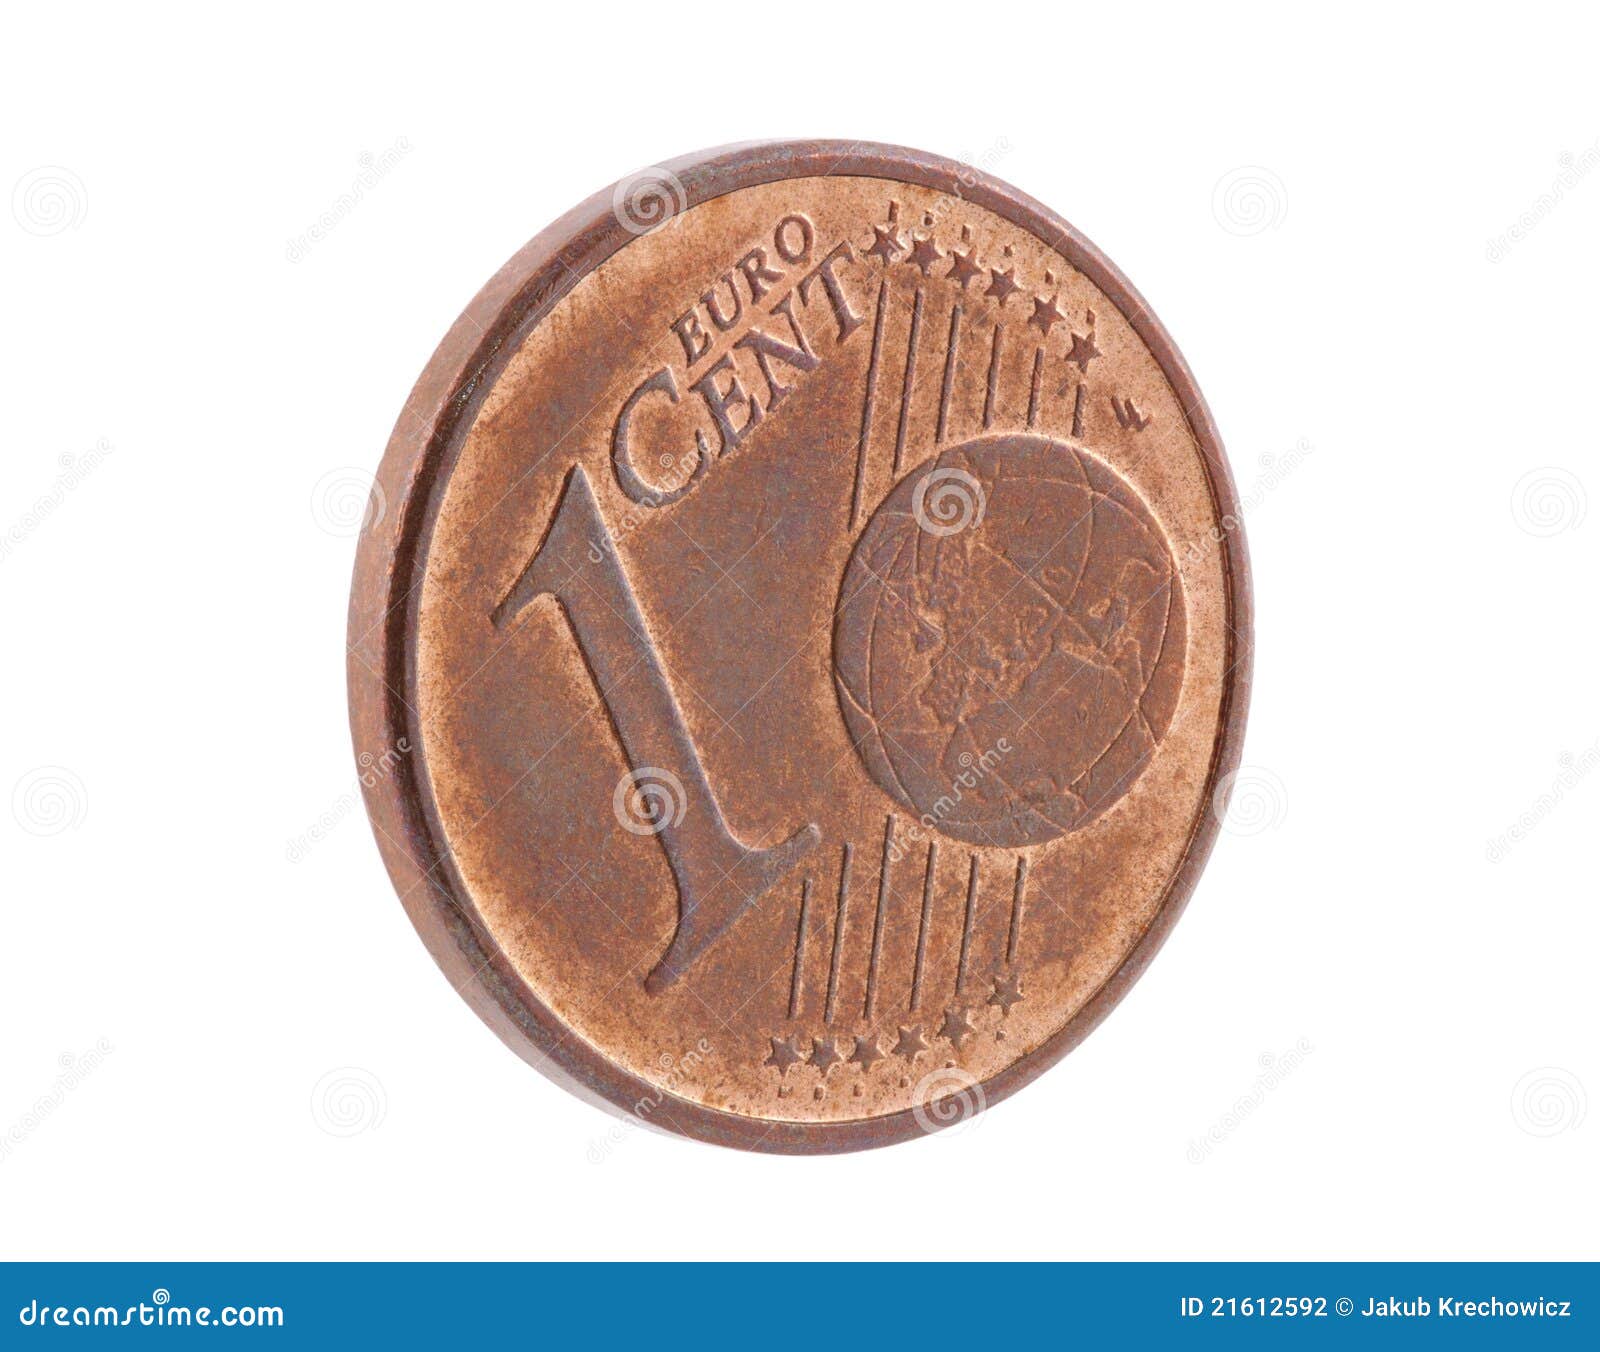 Mezclado Recuerdo Sobretodo Un centavo euro foto de archivo. Imagen de dinero, europeo - 21612592